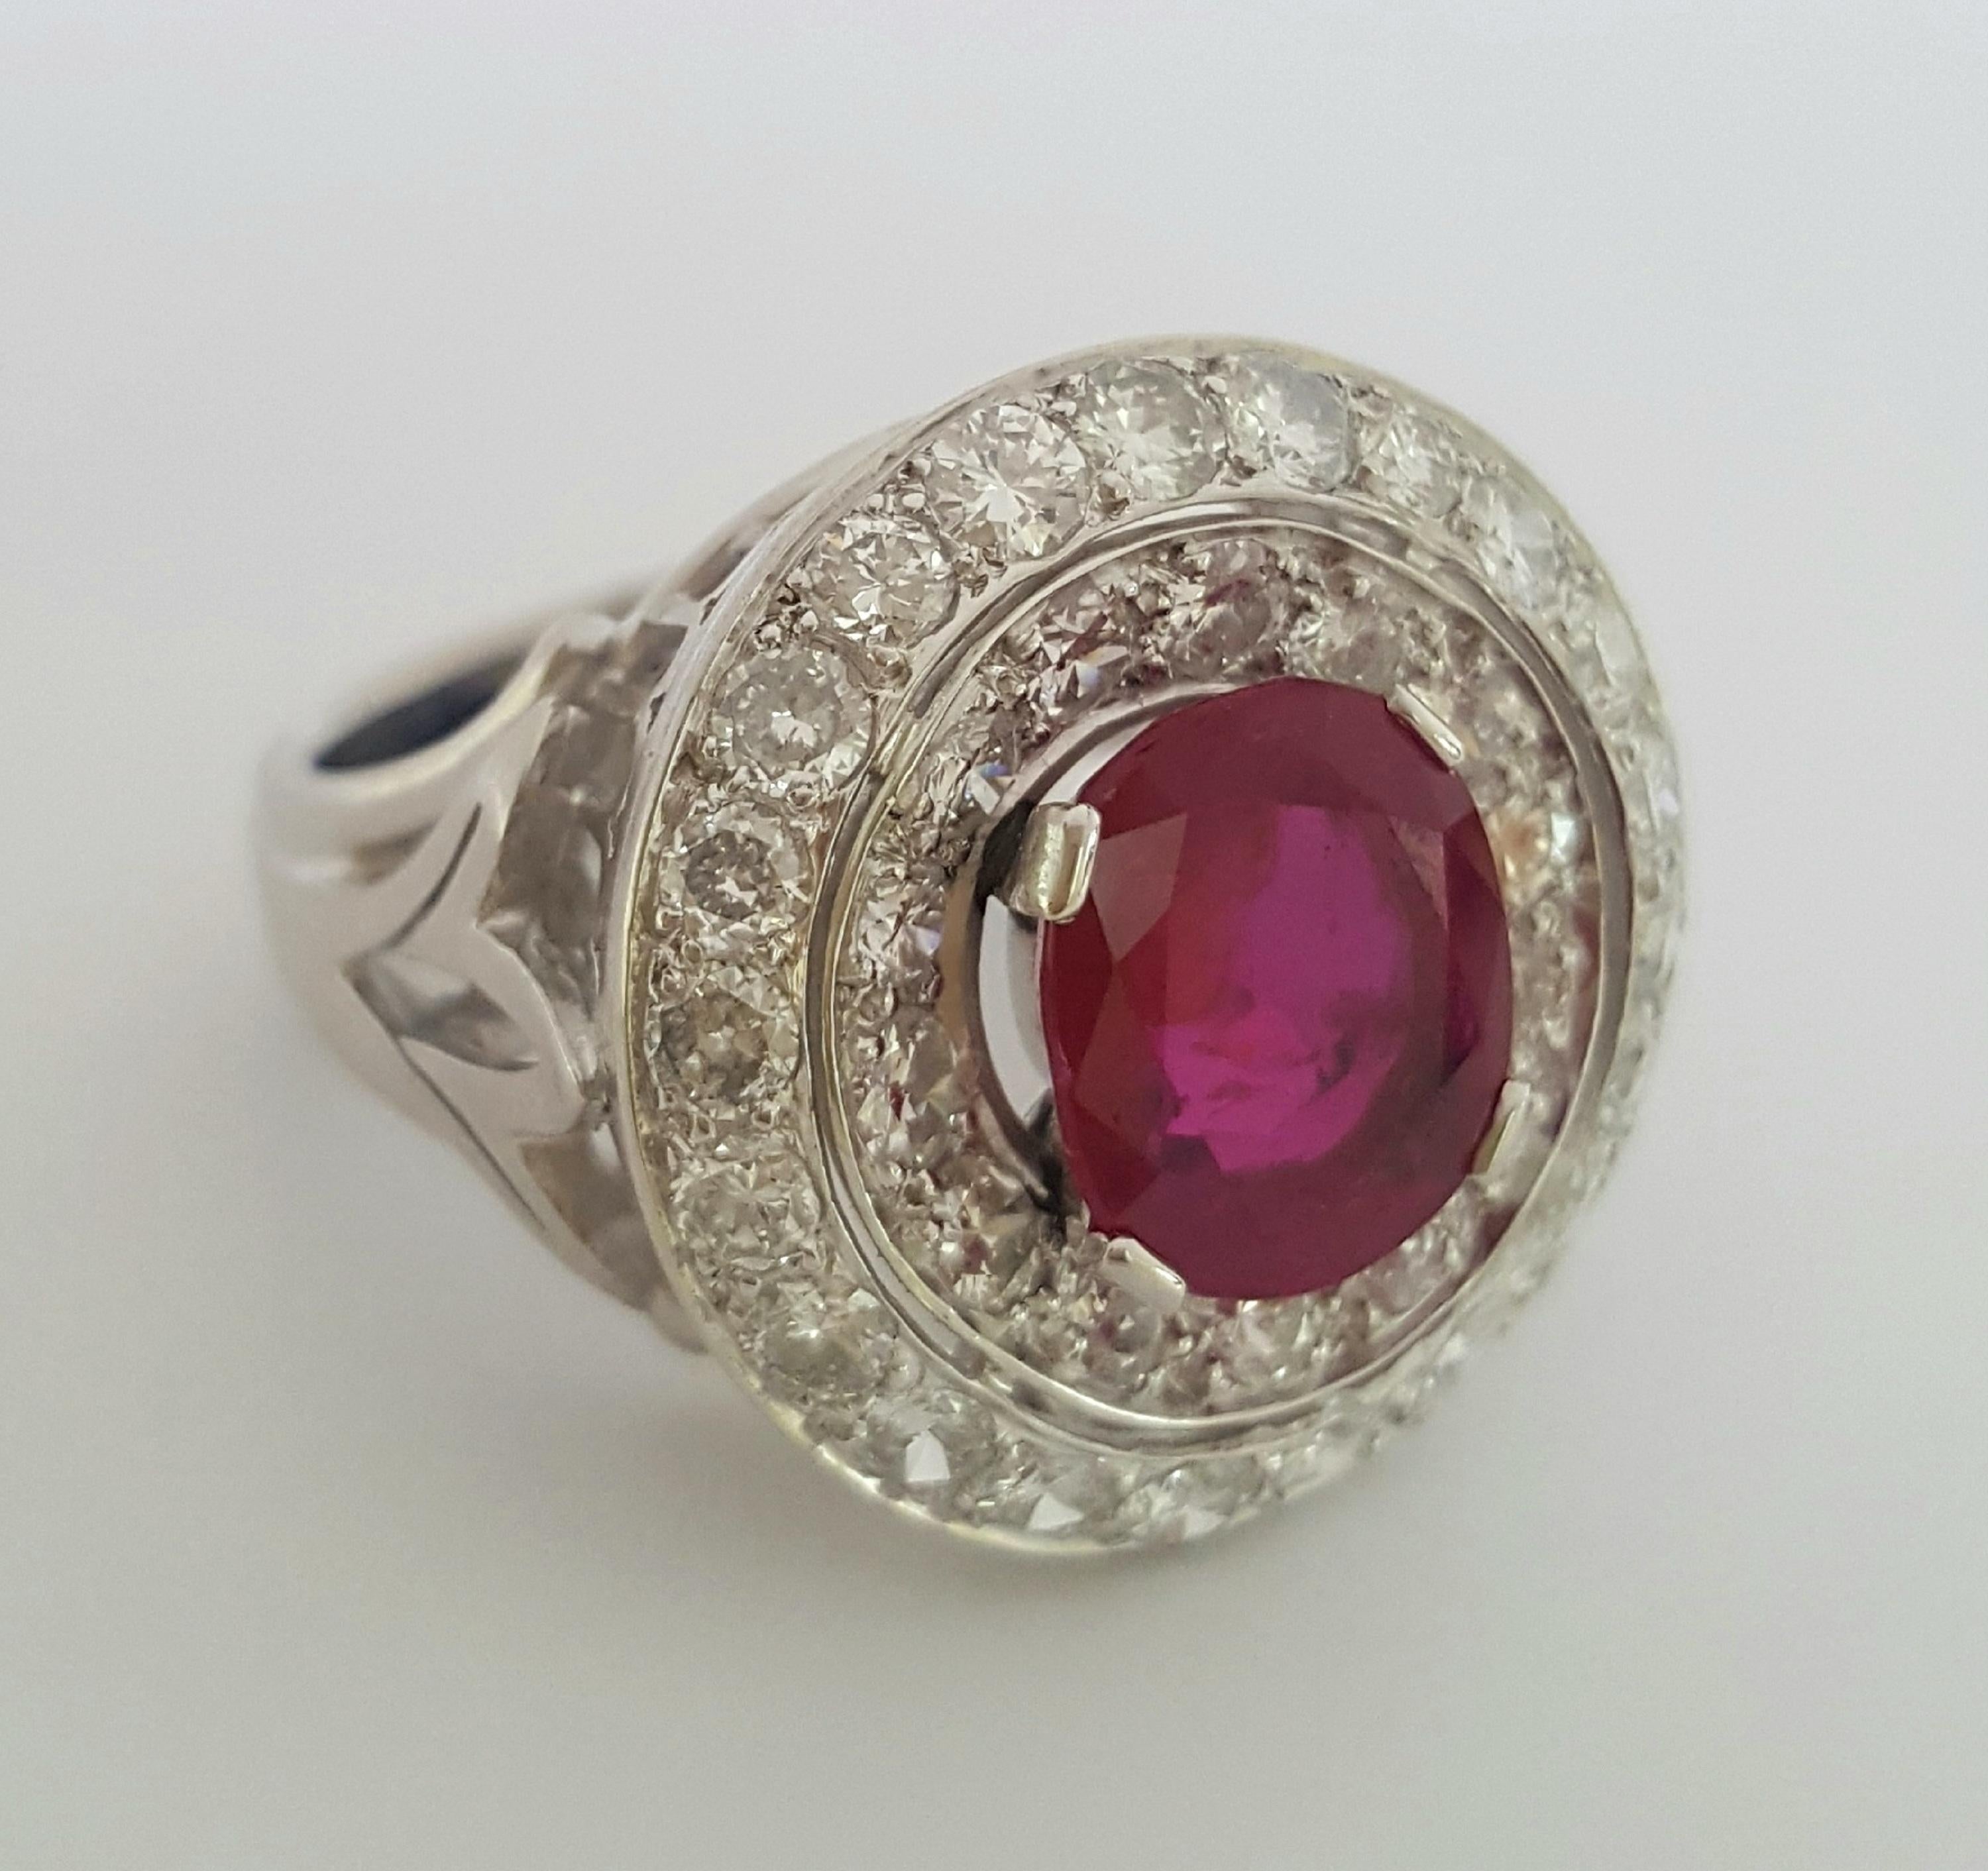 Diese klare, elegante und polierte Ring entworfen und erstellt von Moguldiam Inc verfügt über eine SSEF-zertifizierte ovalen brillanten purpurroten Rubin Burma keine Hitze mit einer Reihe von weißen kleinen runden Brillanten und eine weitere Reihe